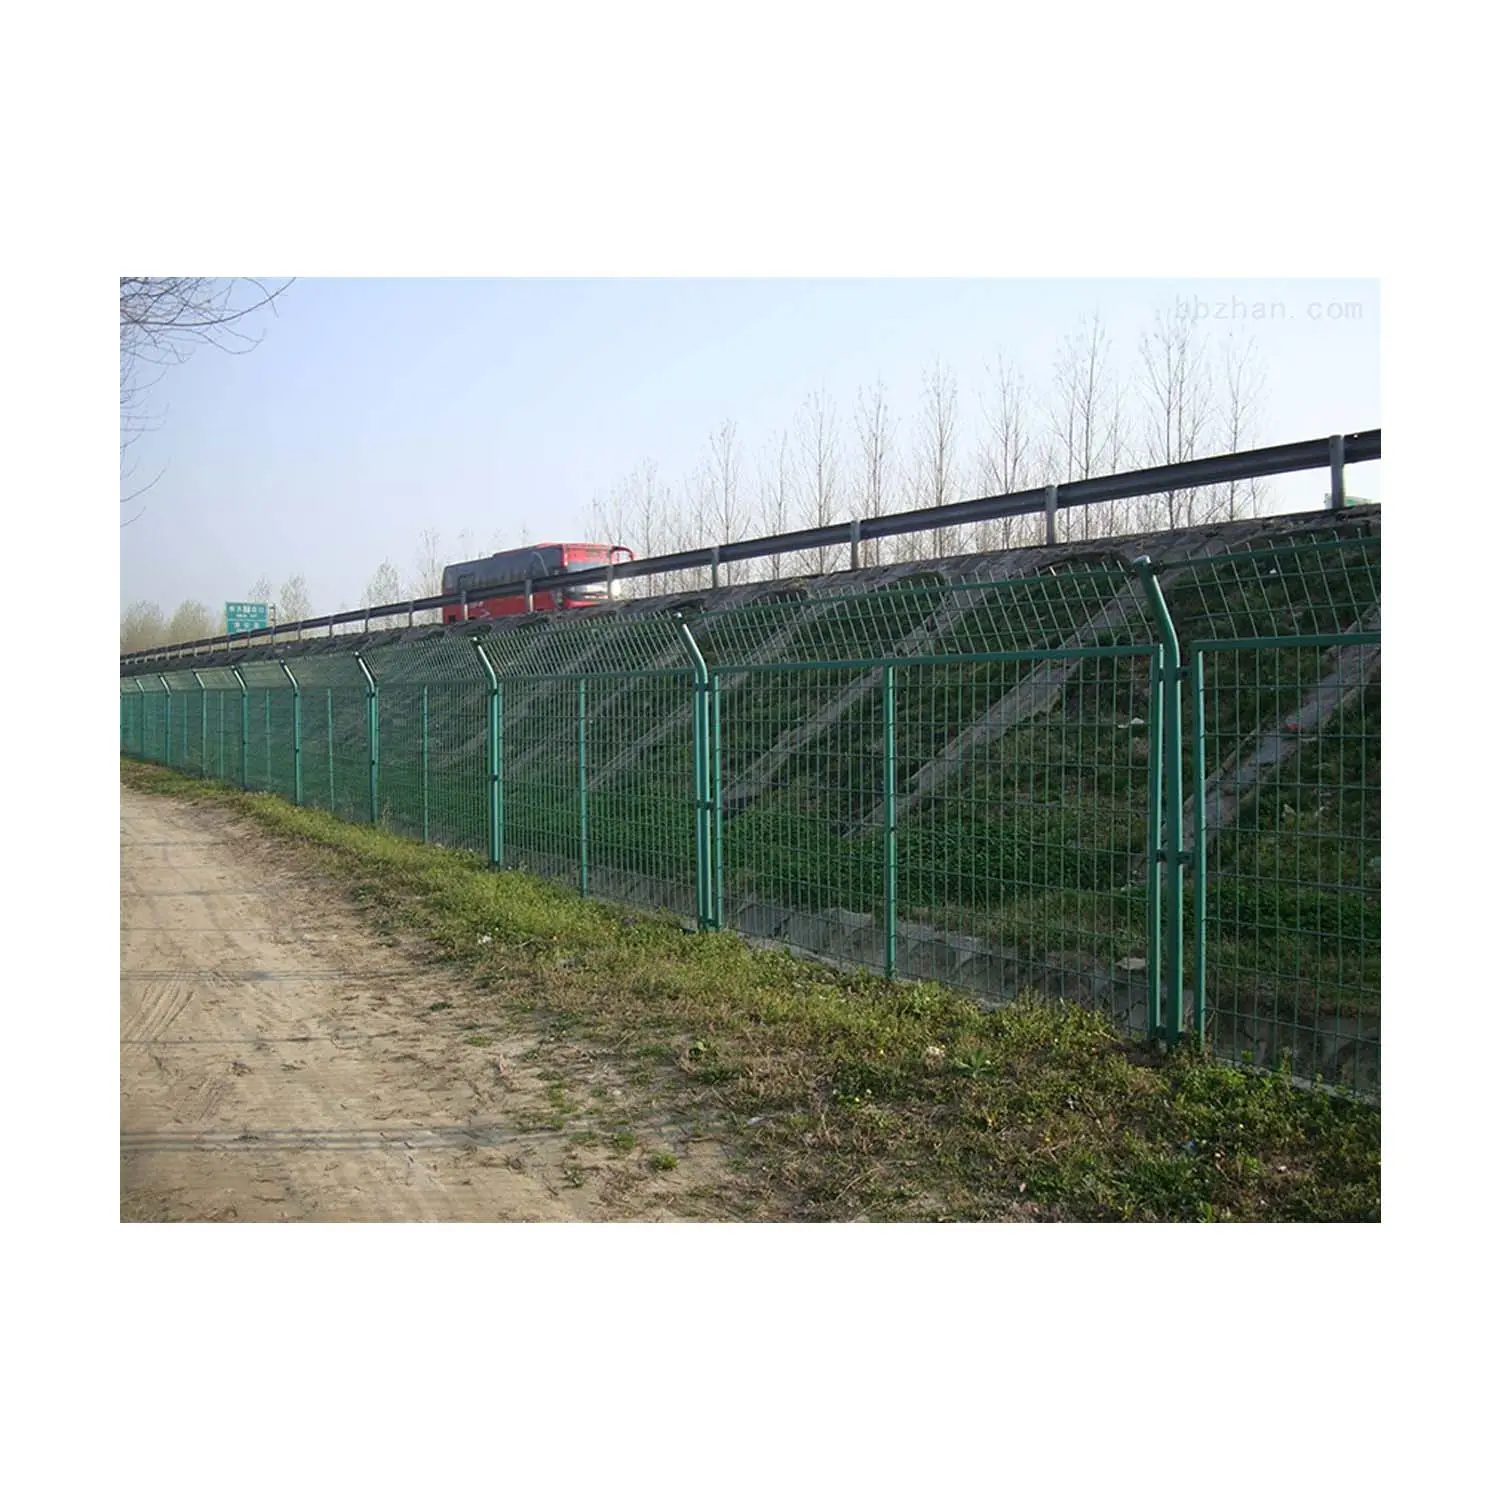 Preis Großhandel Mesh Zaun Highway Fencing Feature nachhaltige technische Unterstützung Video Material Metall veredelung